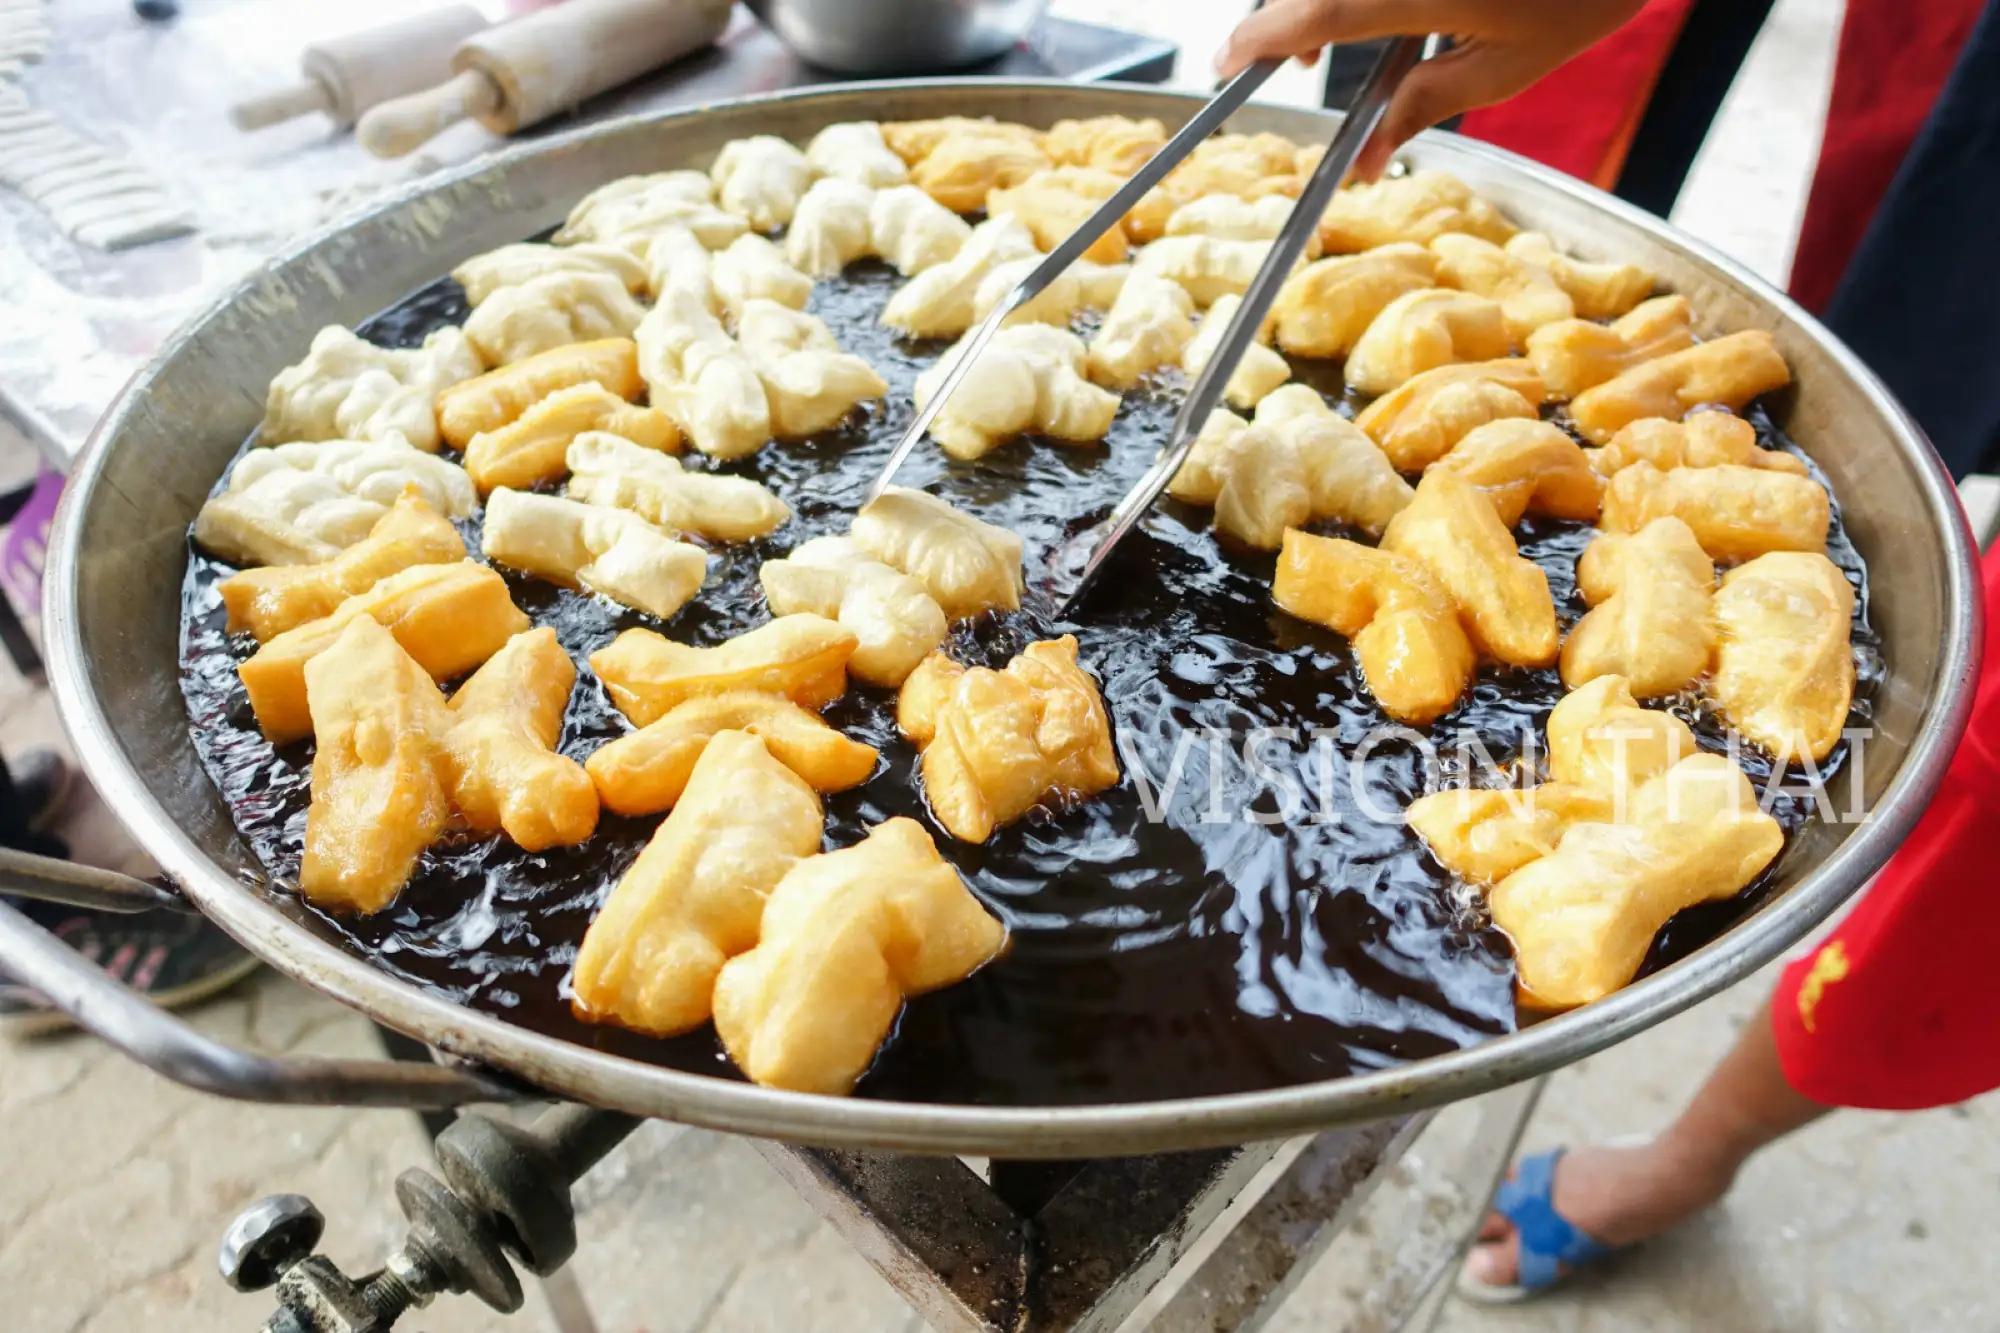 泰国人早餐喜欢油条搭配豆浆一起吃（VISIONTHAI 看见泰国）